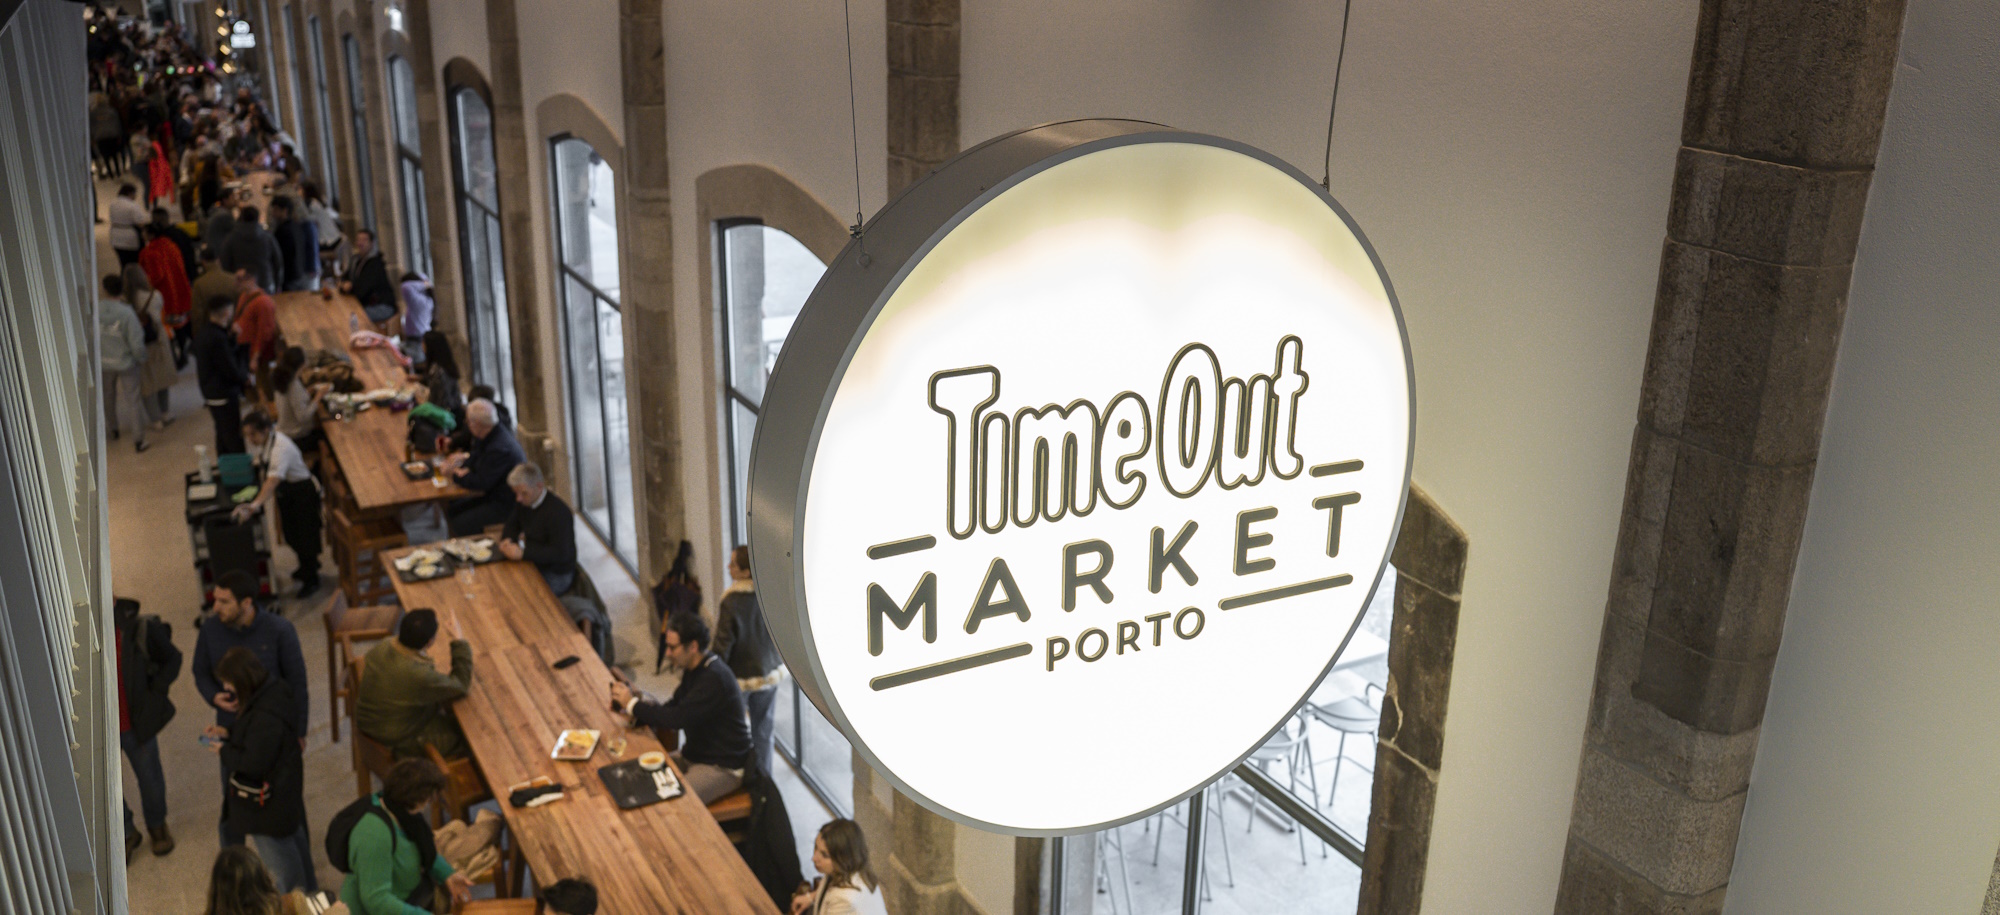 Time Out Market Porto